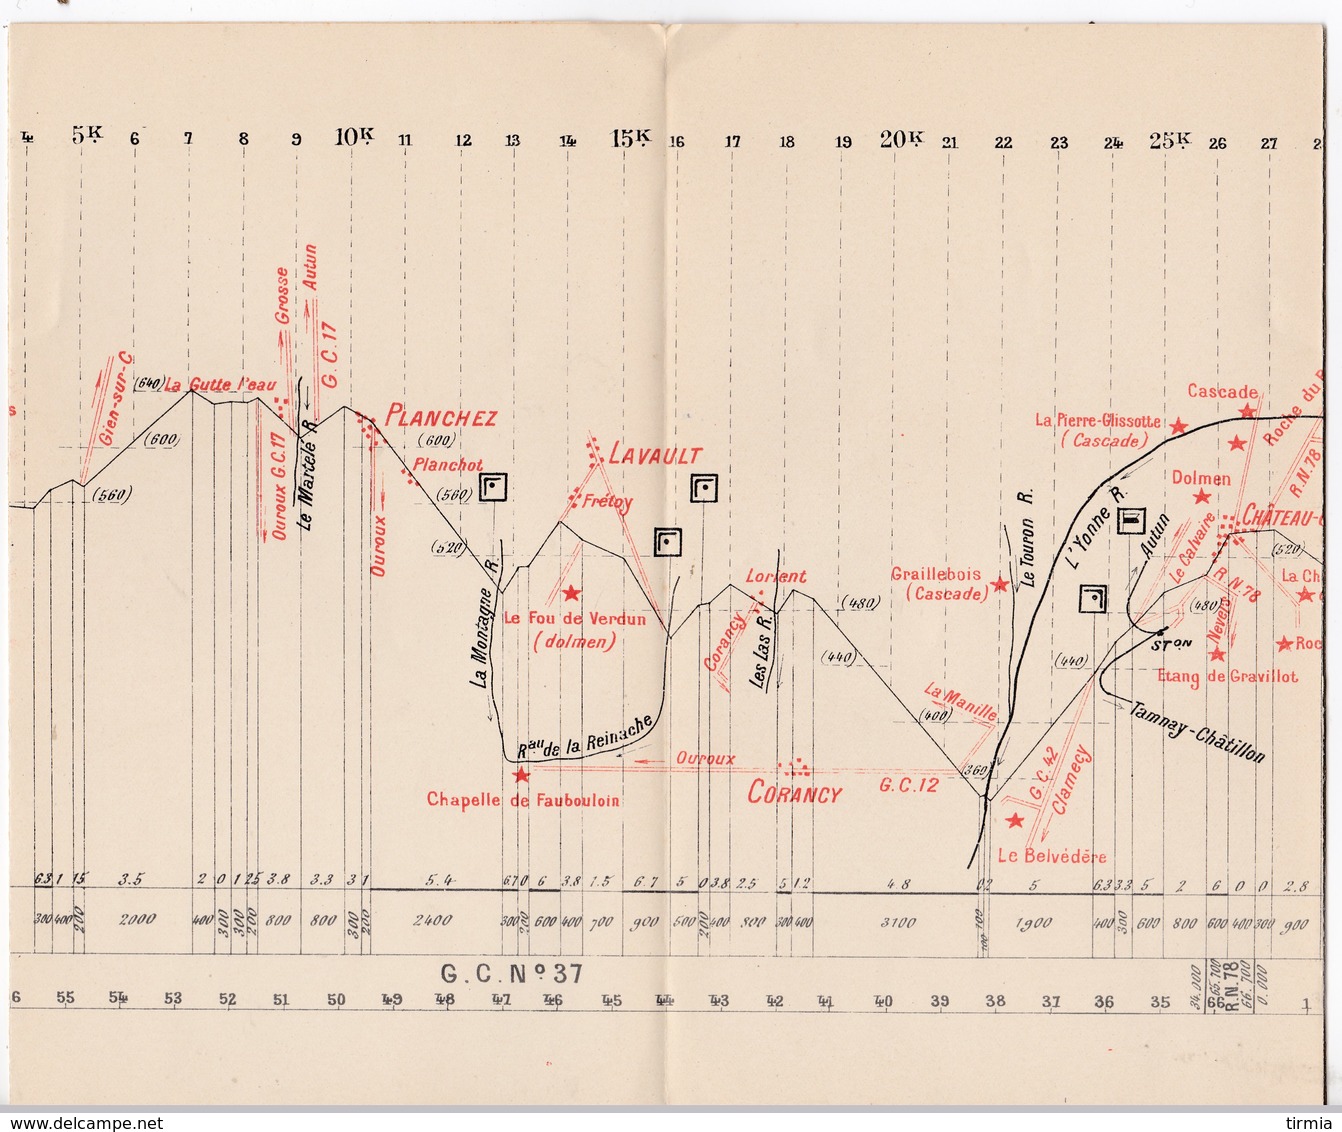 Syndicat general d' iniciative de la Bourgogne - N°8 -annexe plan profil d' un itinéraire -  avril 1907